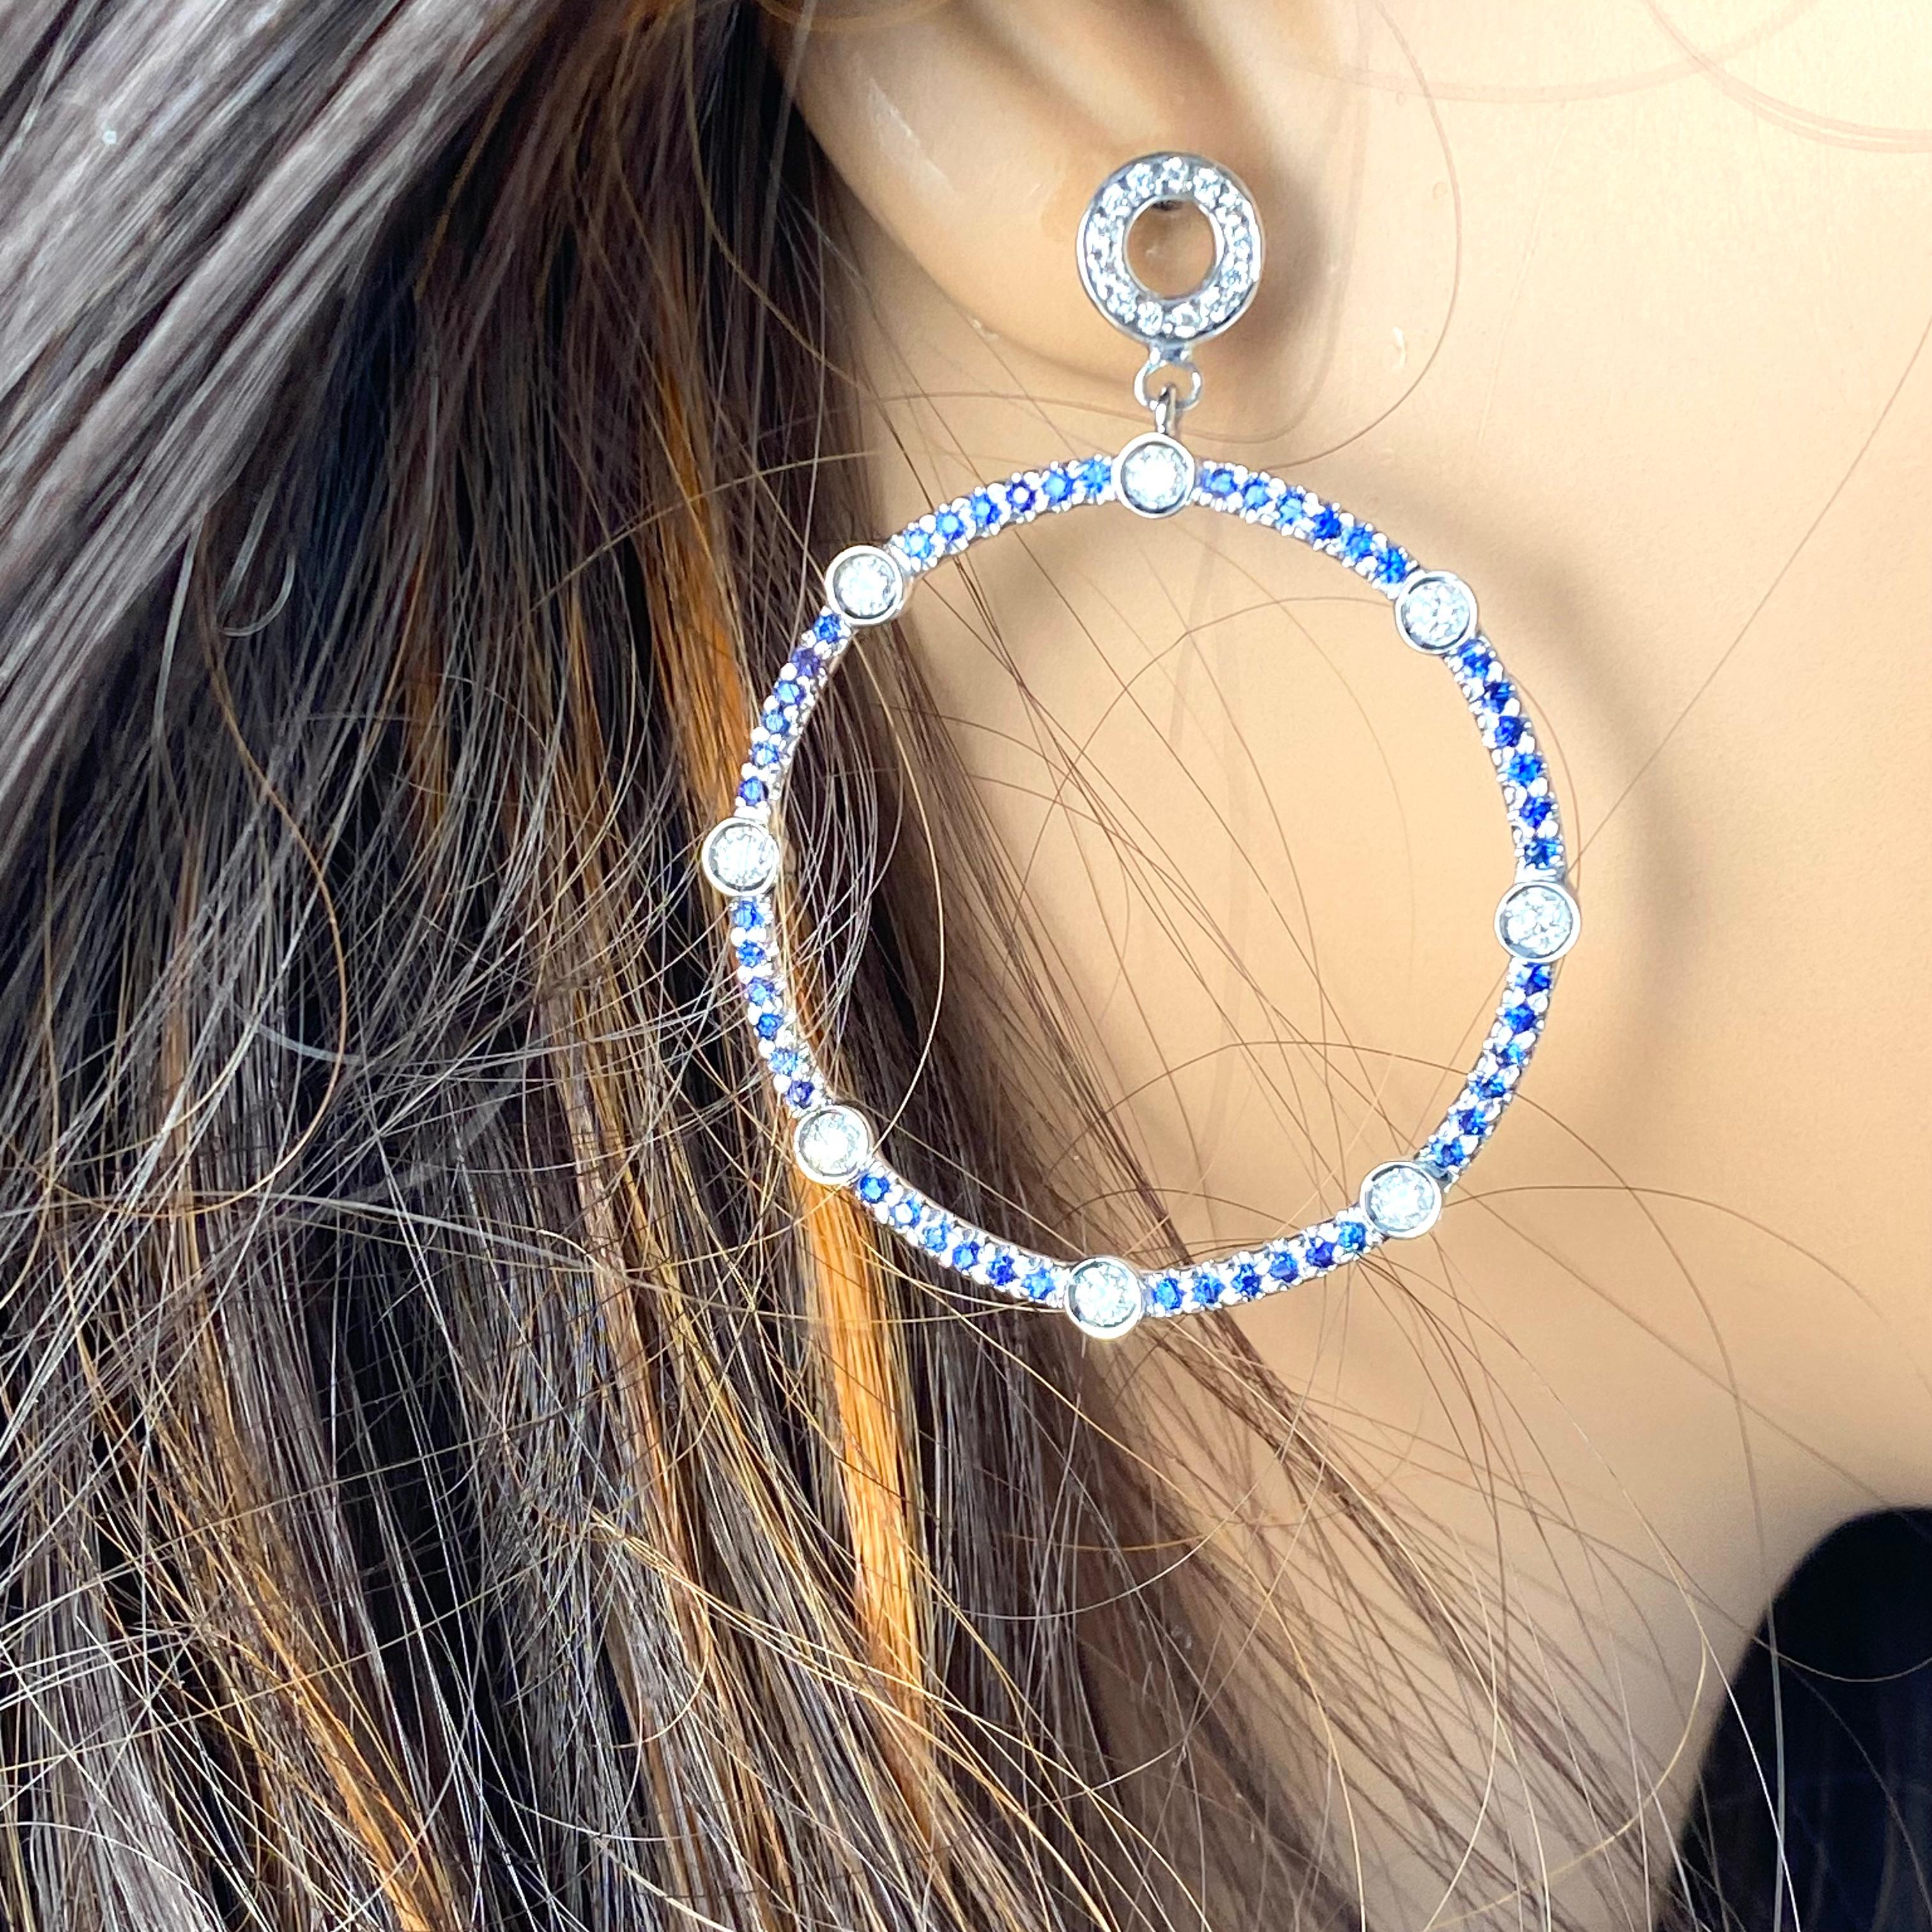 Wir stellen Ihnen unsere exquisiten großen runden Saphir- und Diamantohrringe vor, eine atemberaubende Verschmelzung von Eleganz und Raffinesse. Diese perfekt gearbeiteten Ohrringe bestechen durch ihr faszinierendes Design mit glänzenden Saphiren